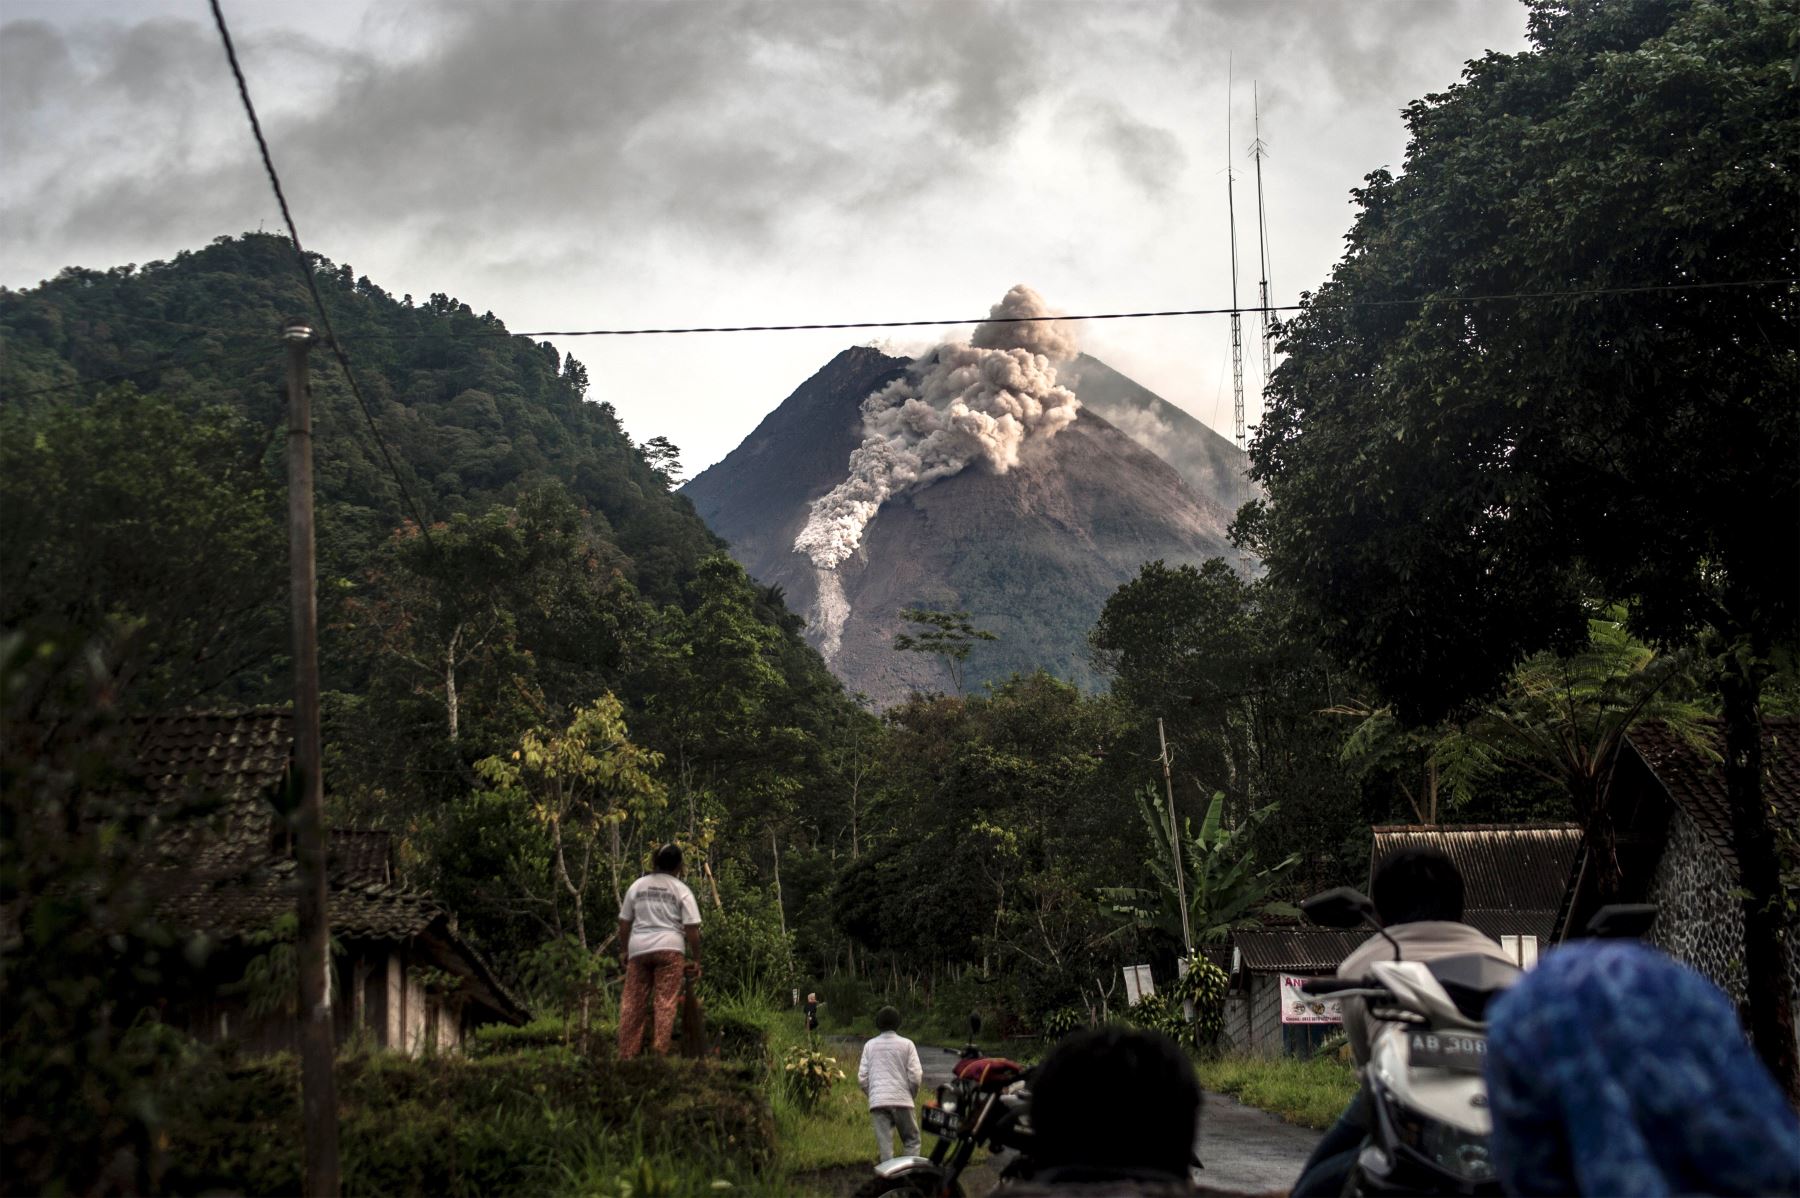 Volcán indonesio, Mount Merapi, entra en erupción y arroja ceniza caliente a tres kilómetros de distancia. Foto: AFP